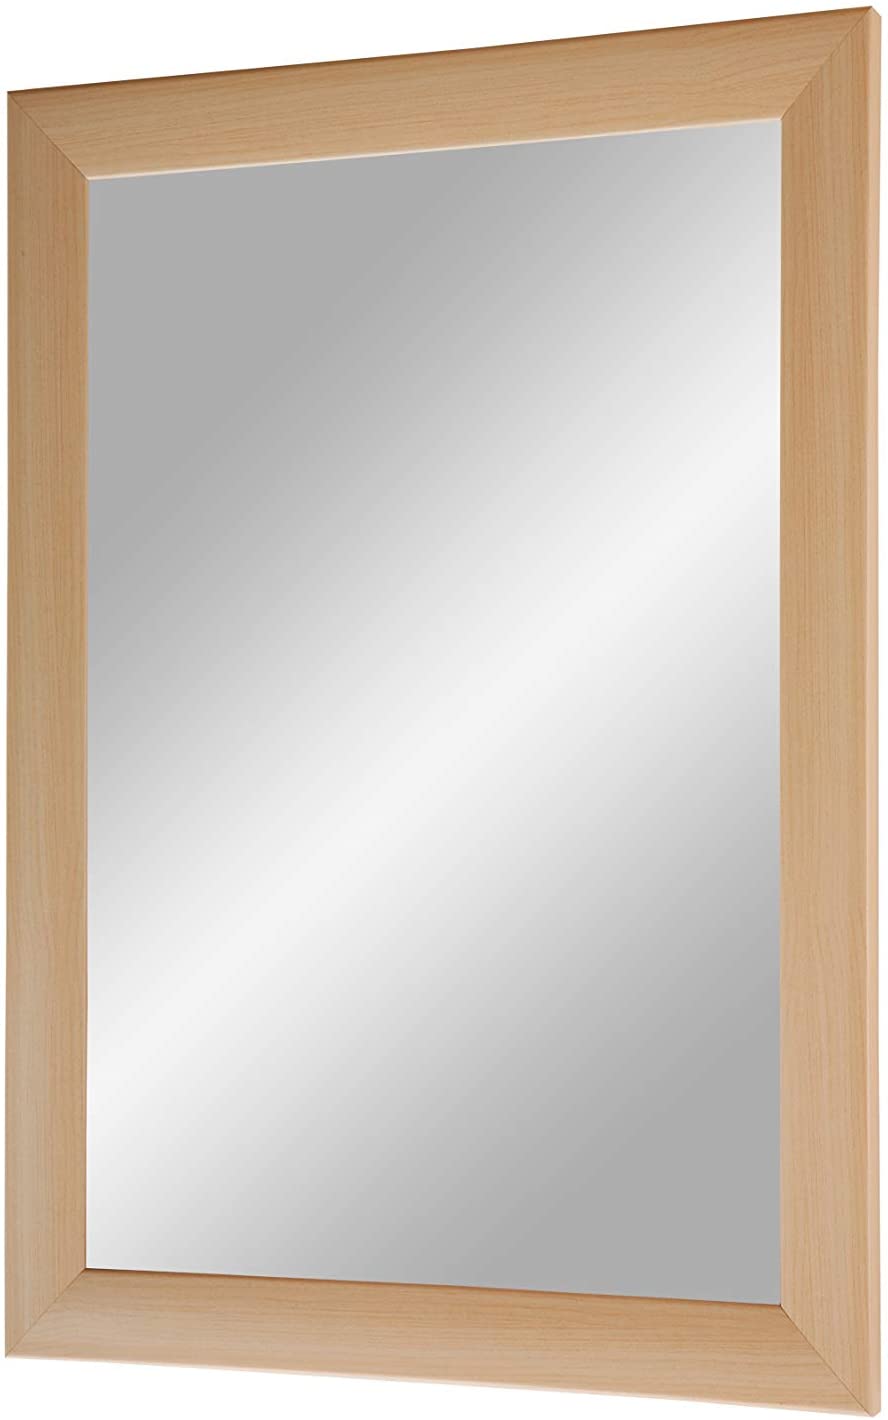 EXCLUSIV Wandspiegel nach Maß (Ahorn-Natur), Maßgefertigter Spiegelrahmen inkl. Spiegel und stabiler Rückwand mit Aufhängern